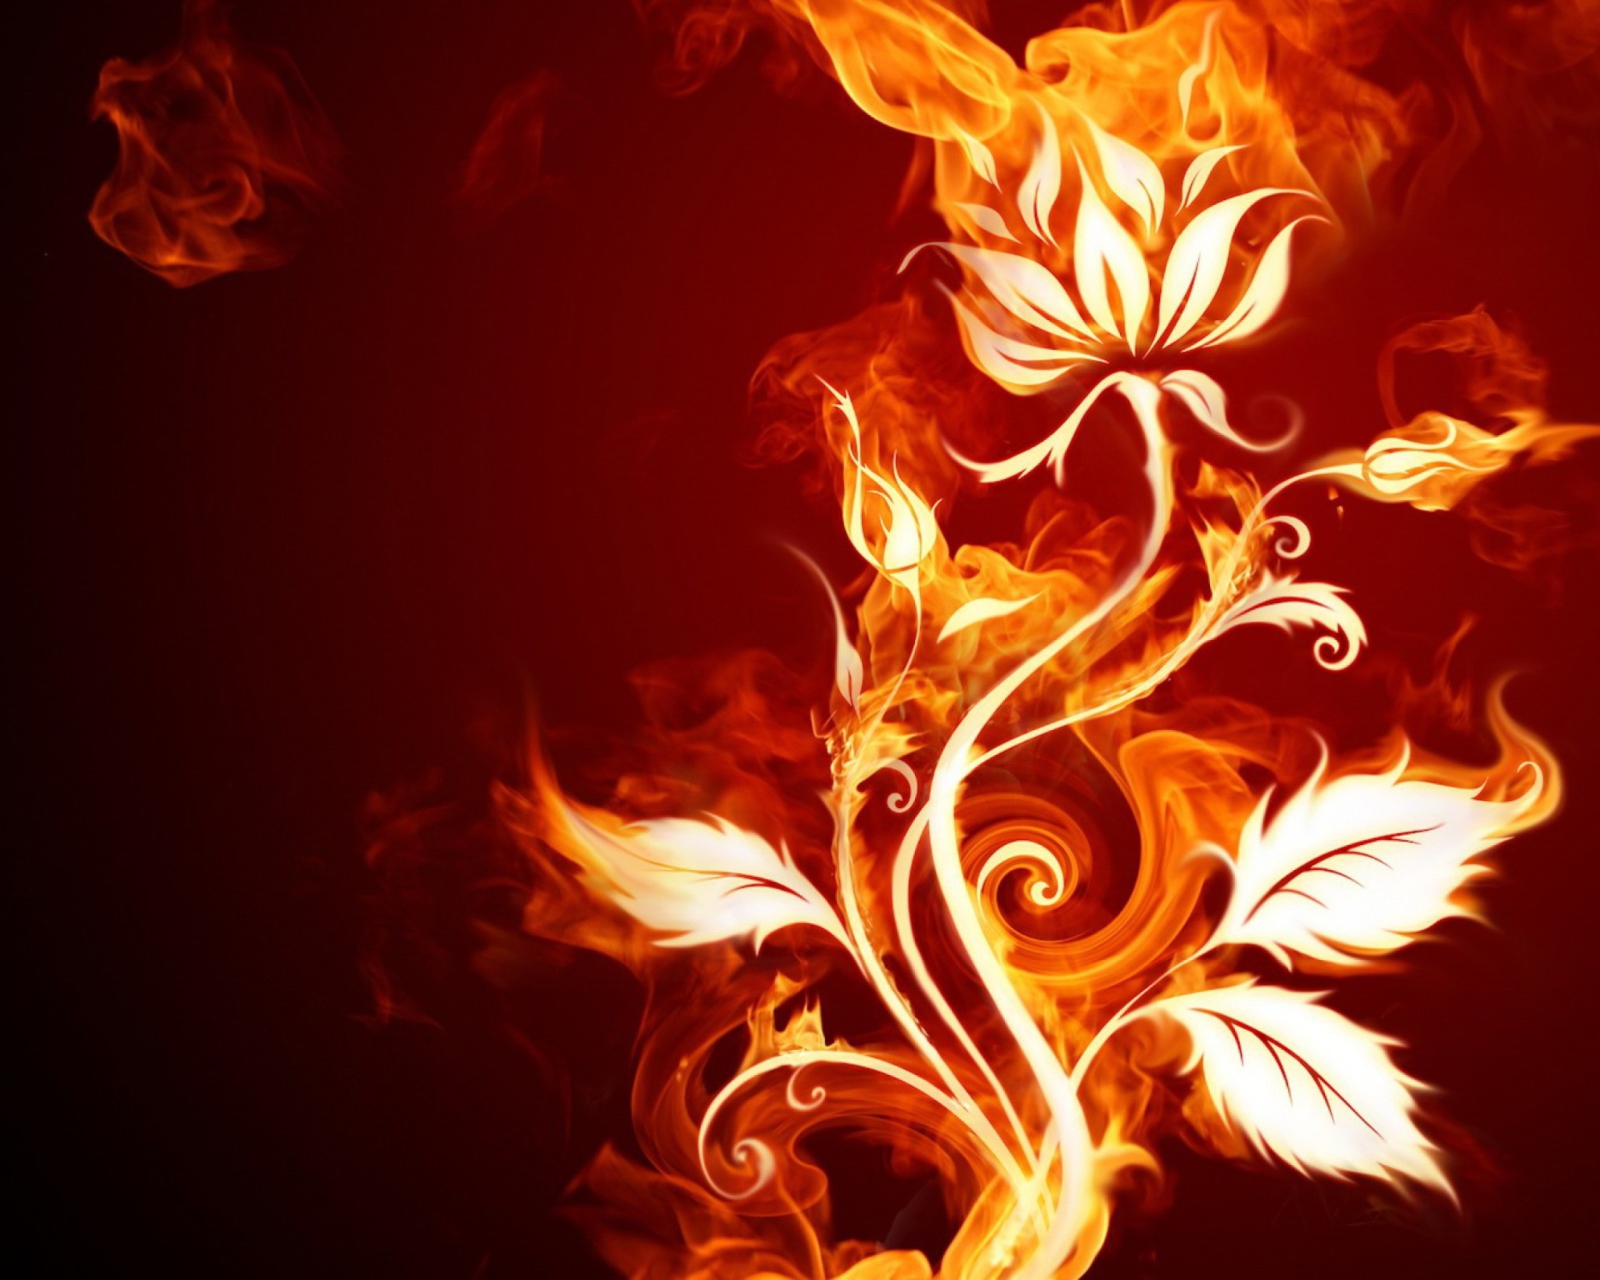 Das Fire Flower Wallpaper 1600x1280